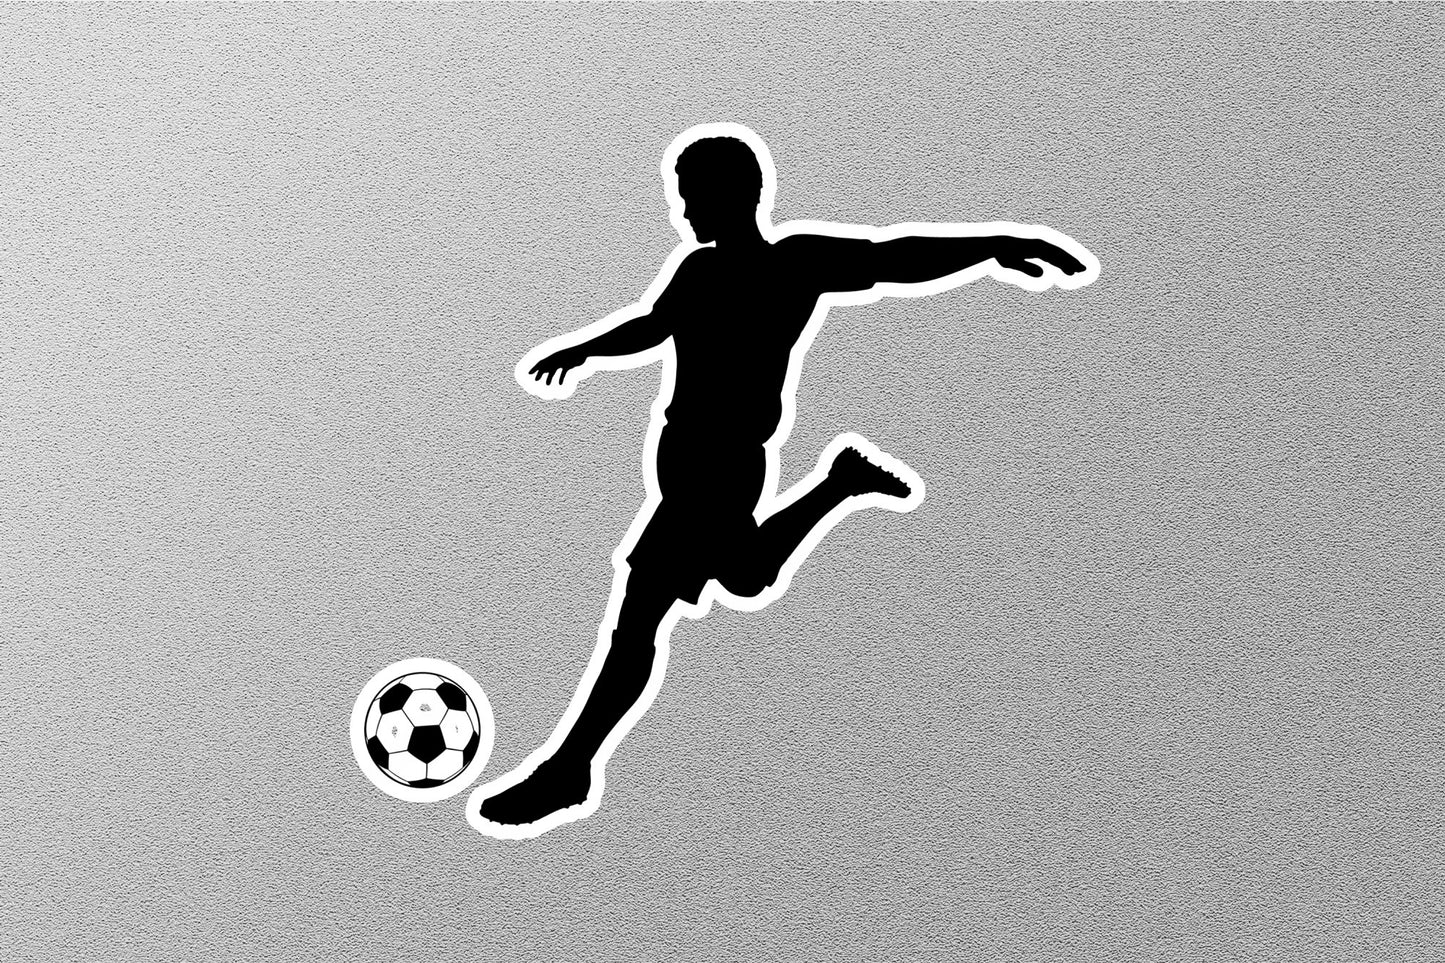 Soccer Player Kicking Ball Sticker